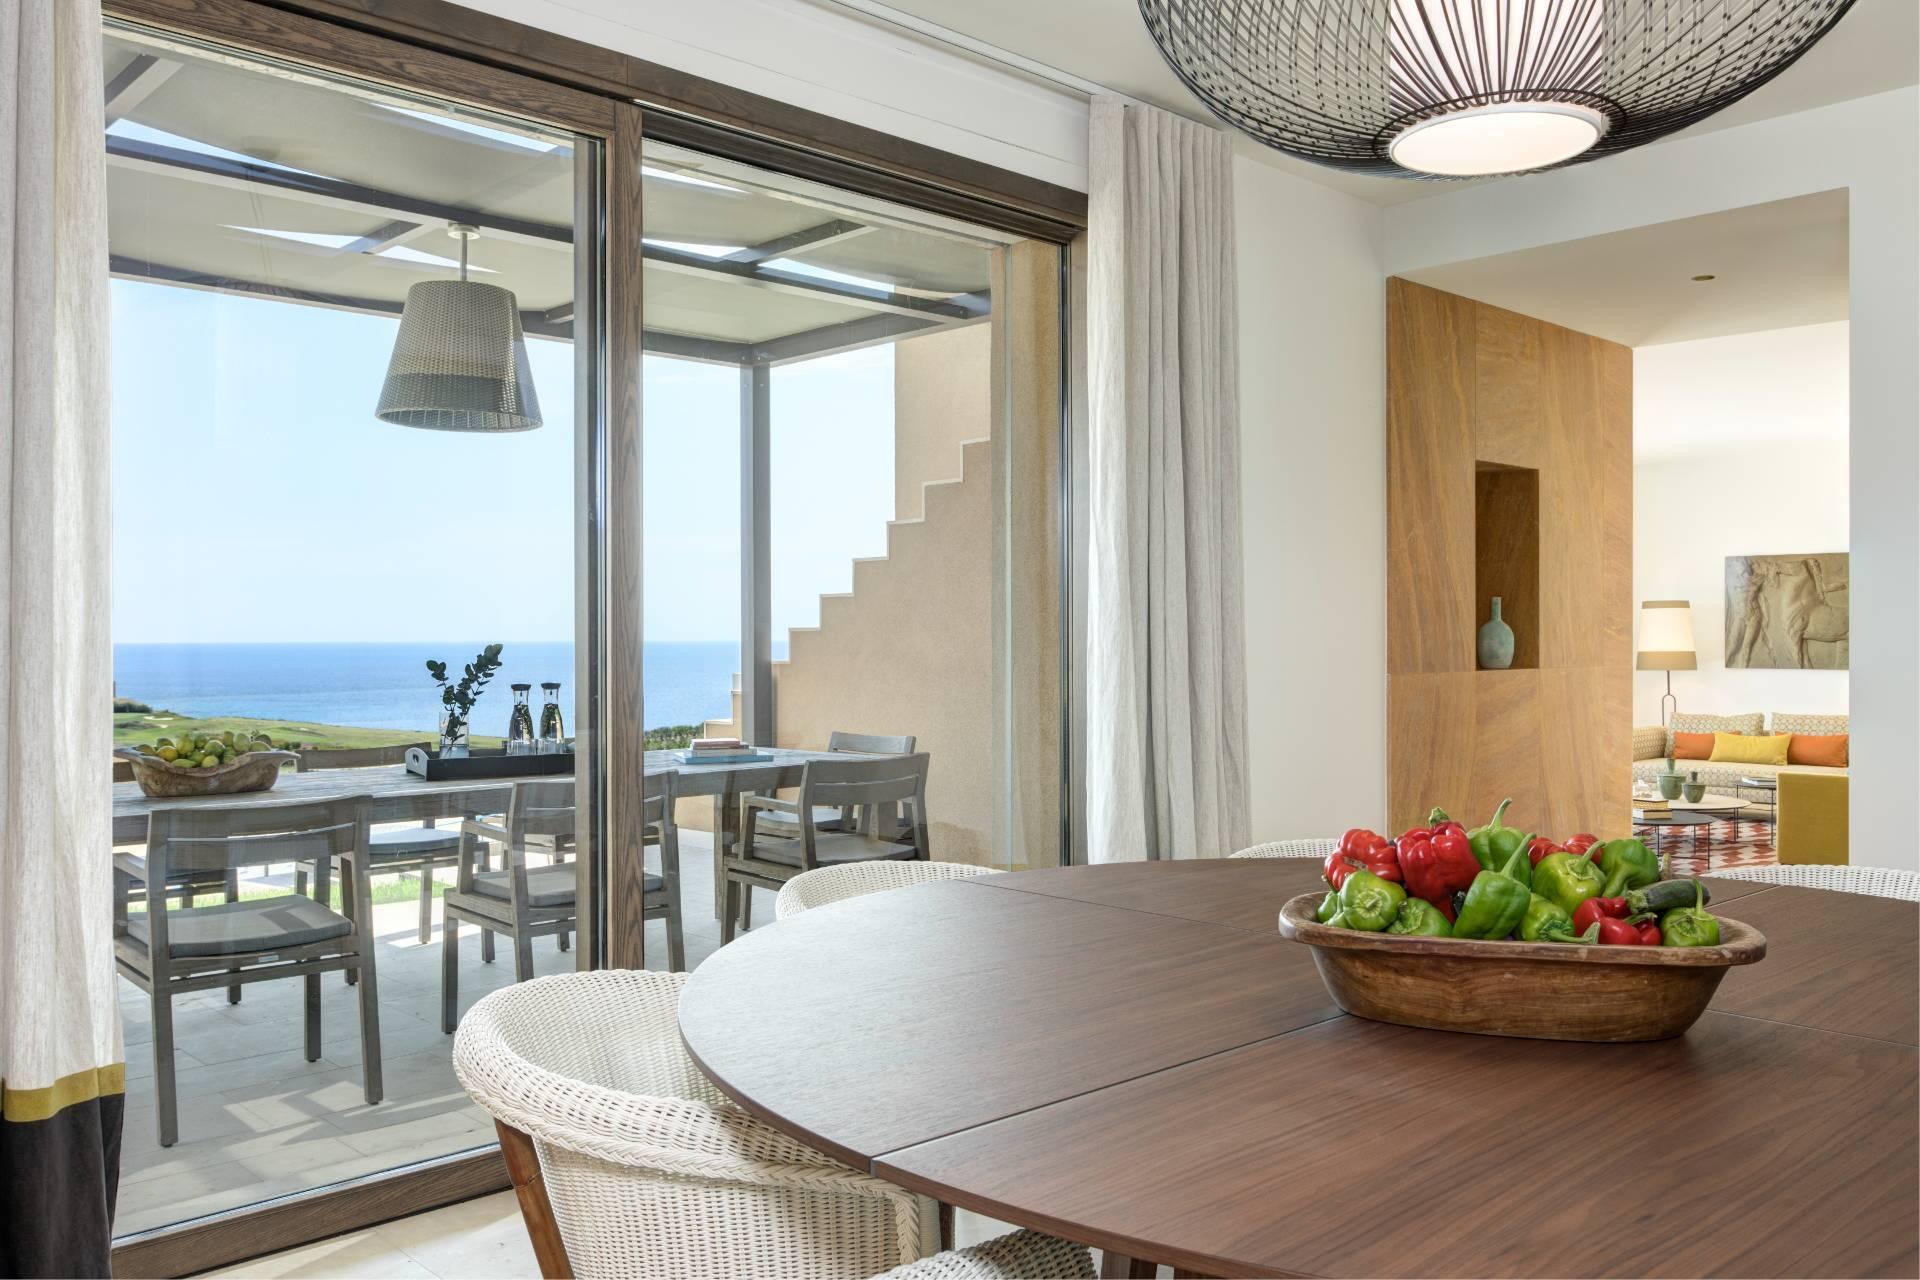 Stunning four bedroom villa overlooking southern Sicilian coast - 13